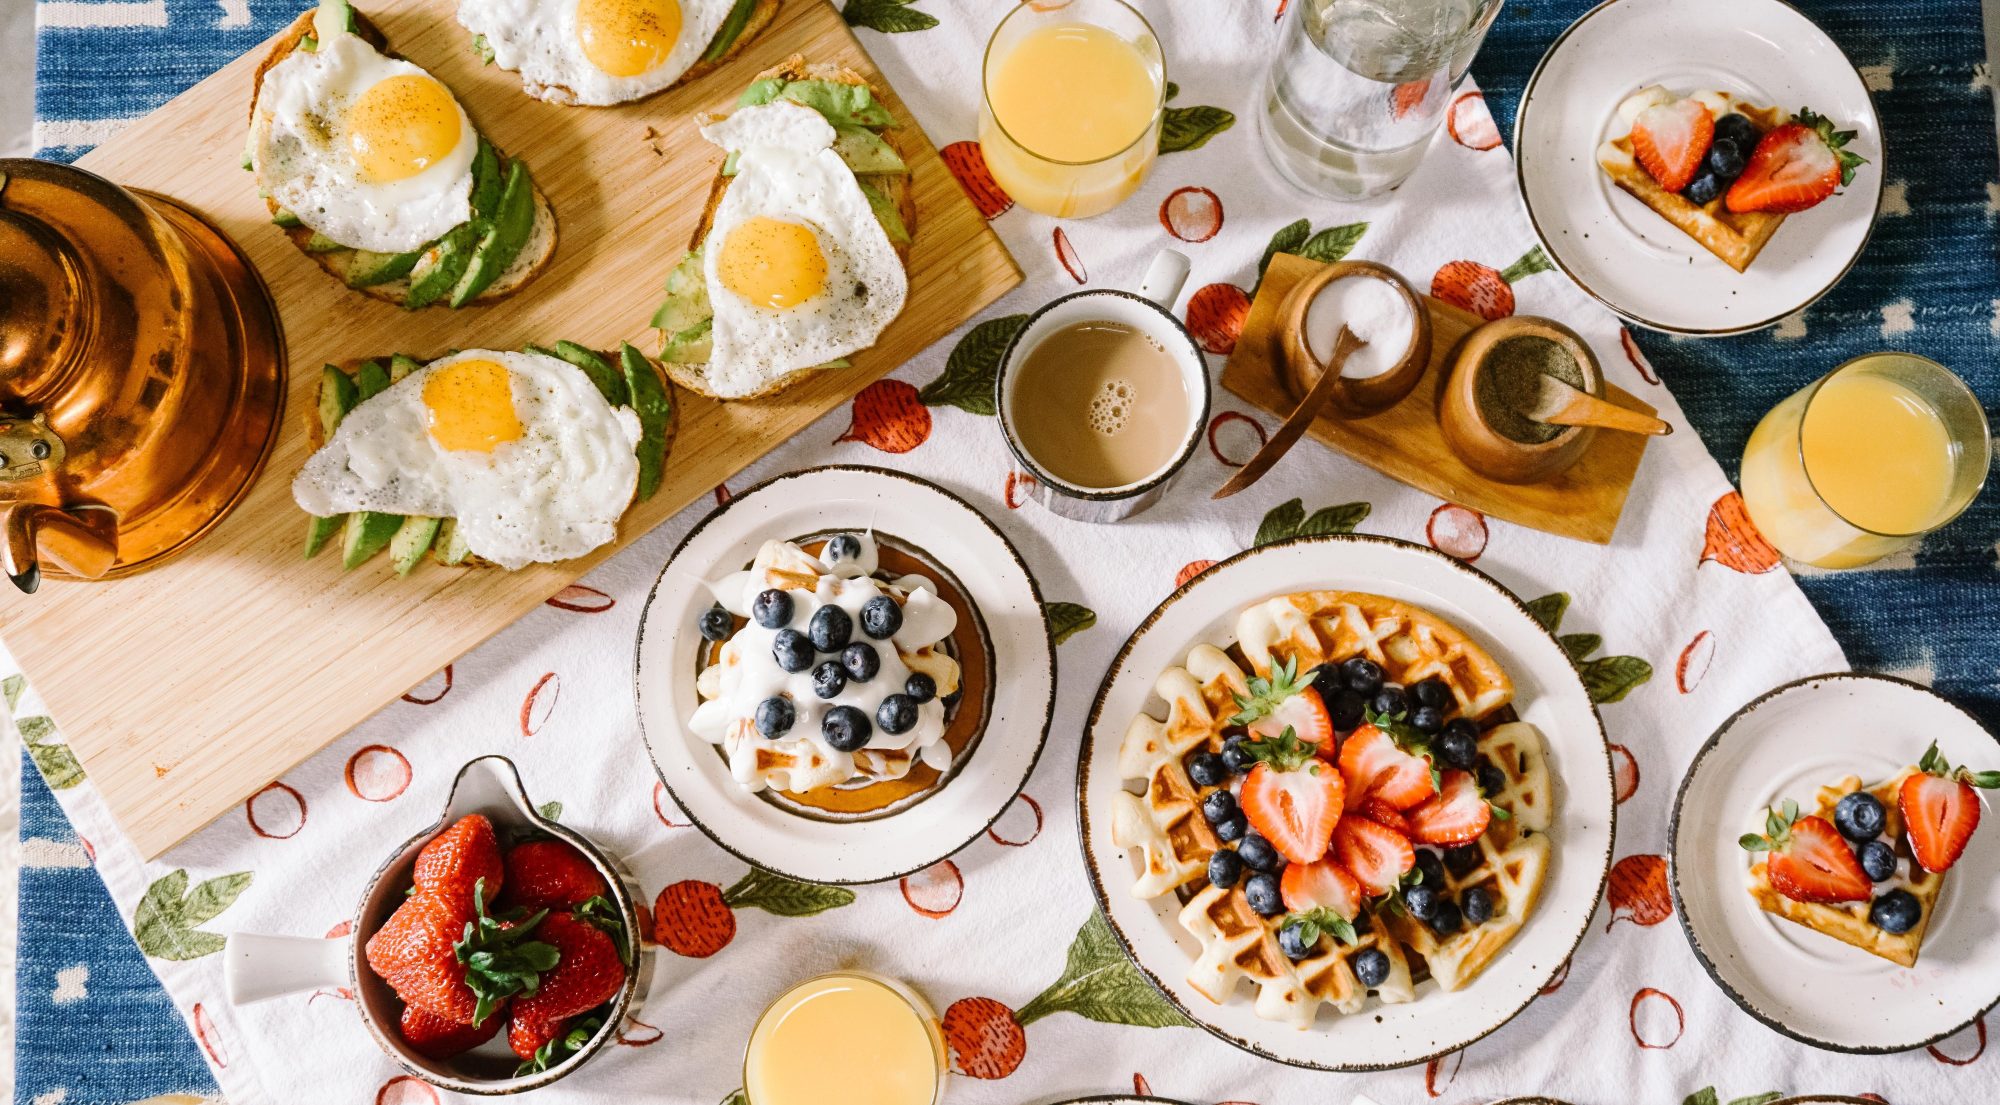 Το πρωινό γεύμα που θα σε βοηθήσει να καταπολεμήσεις το άγχος σου Ξεκίνα σωστά τη μέρα σου και νιώσε καλύτερα!